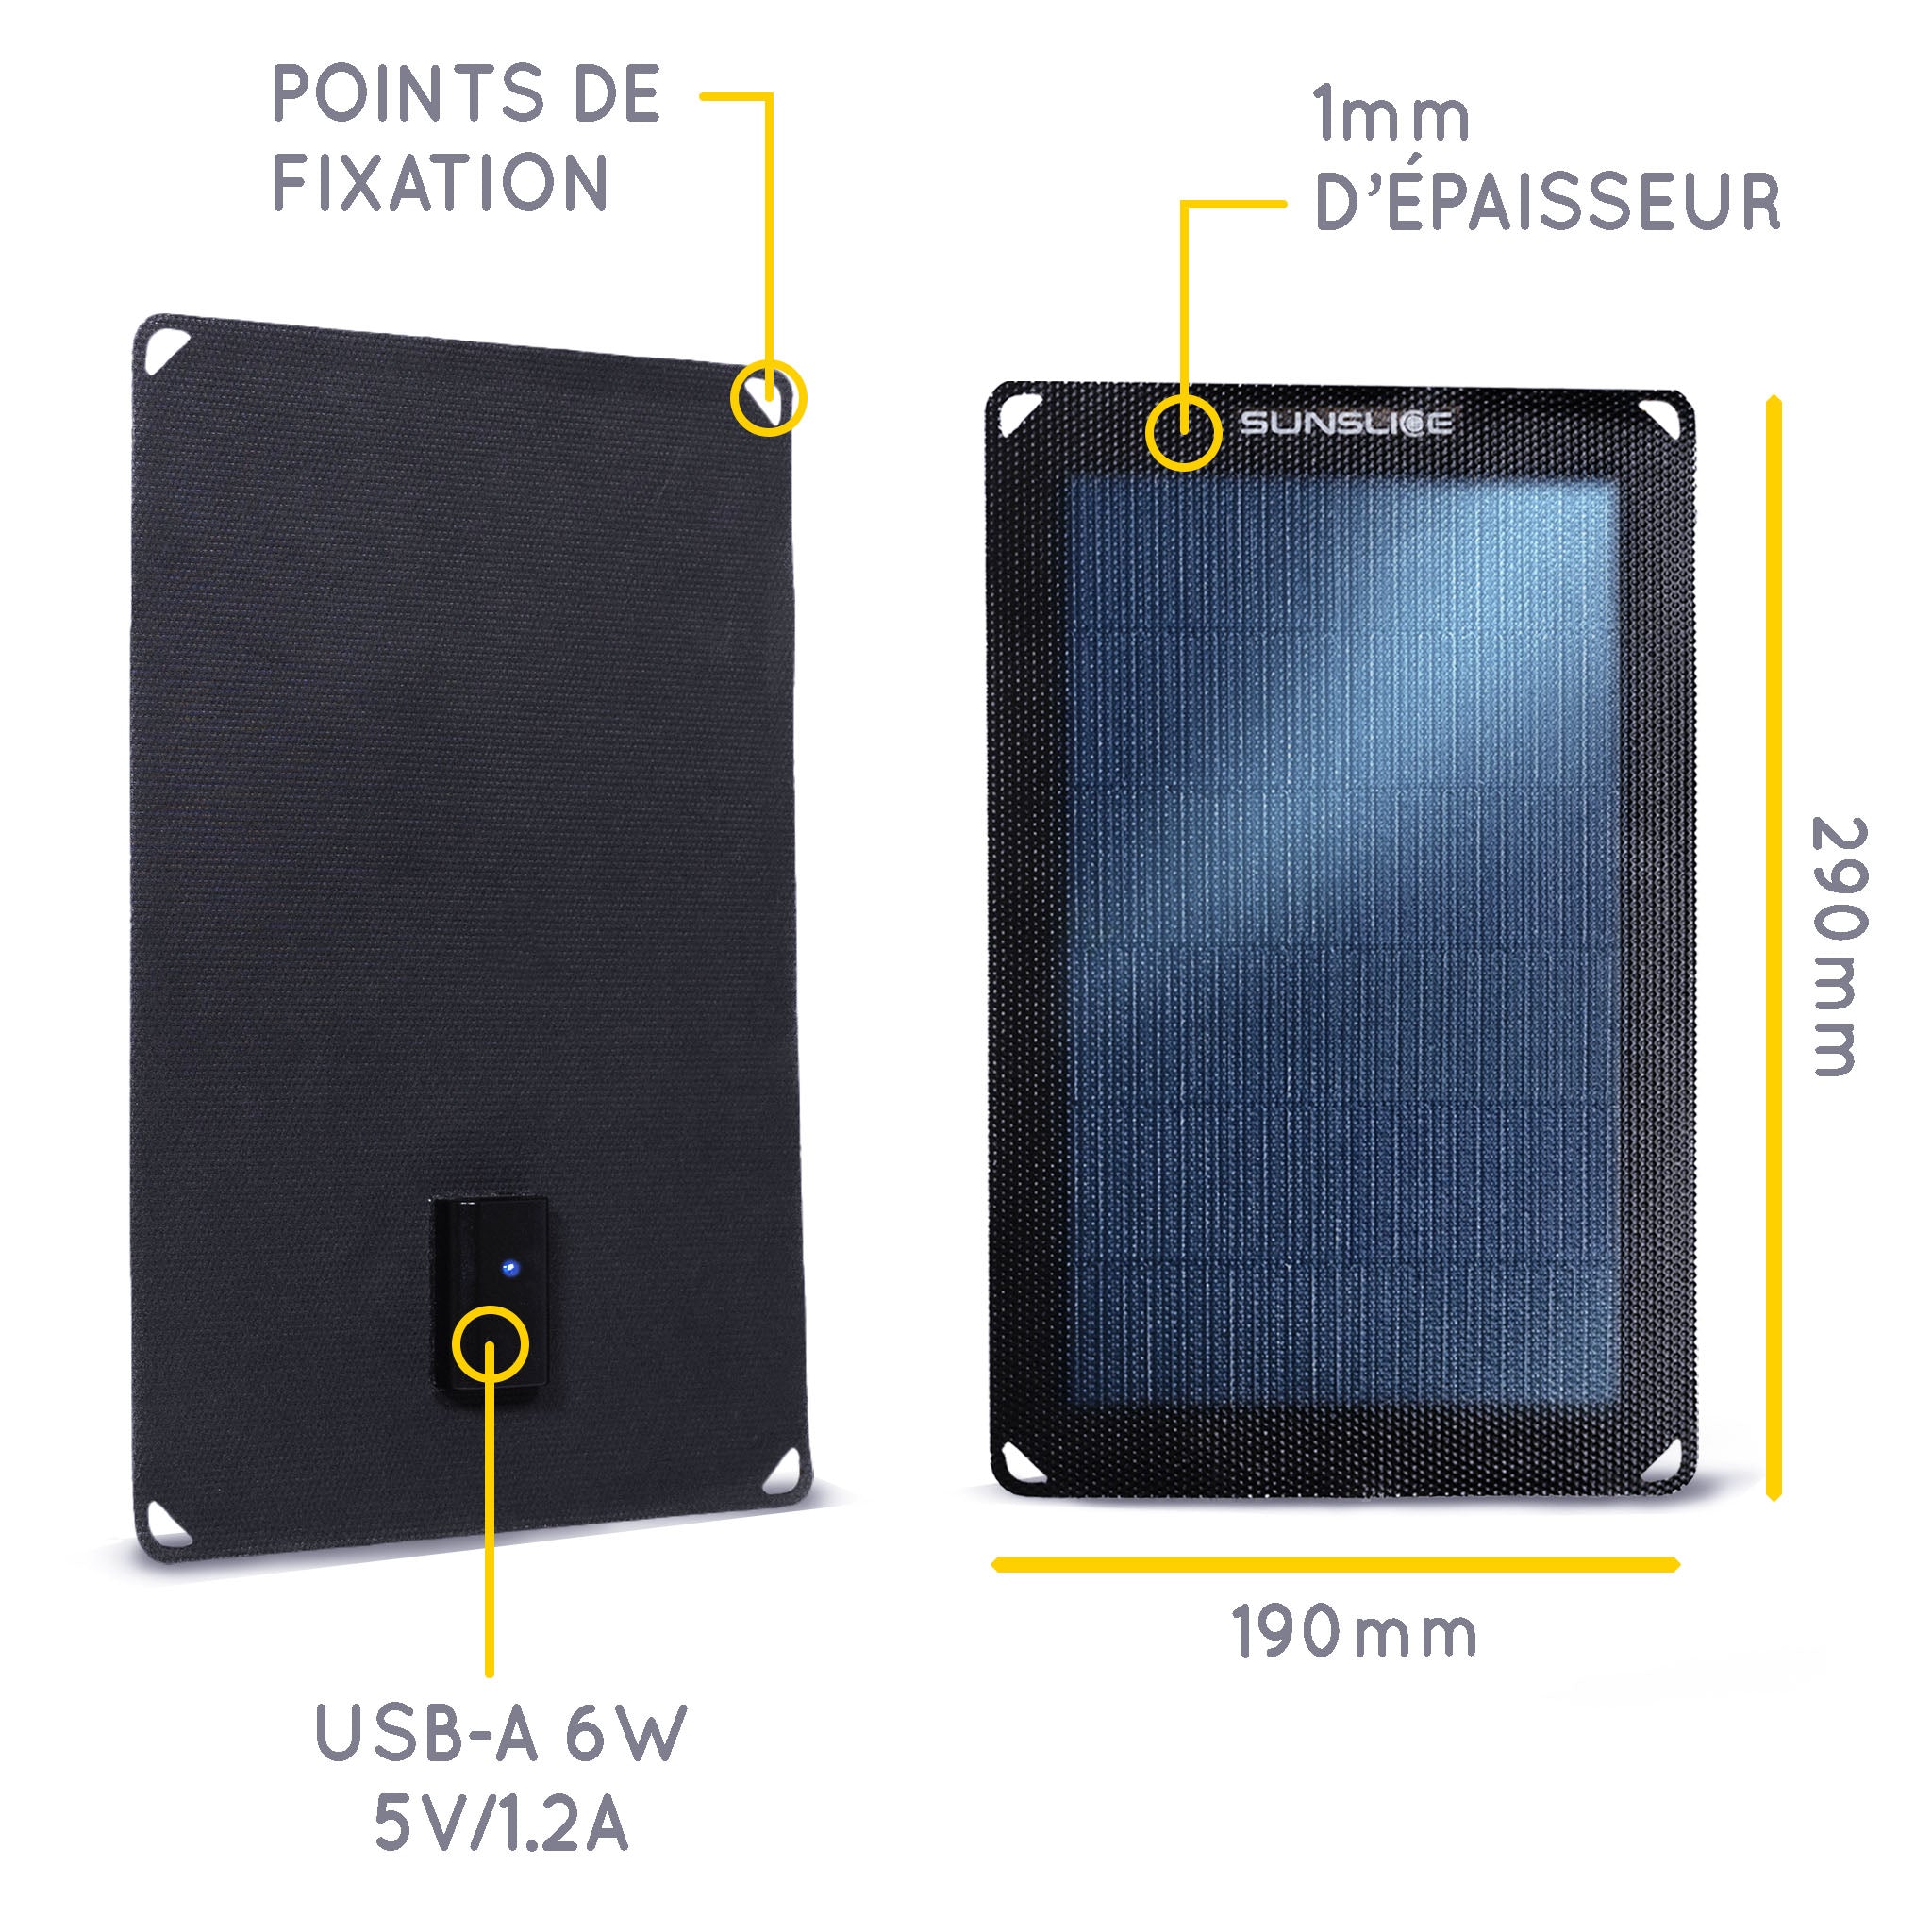 Informations sur le panneau solaire portable : Taille : 290 mm, 190 mm,, Epaisseur : 1mm. Sortie : USB-A 6w 